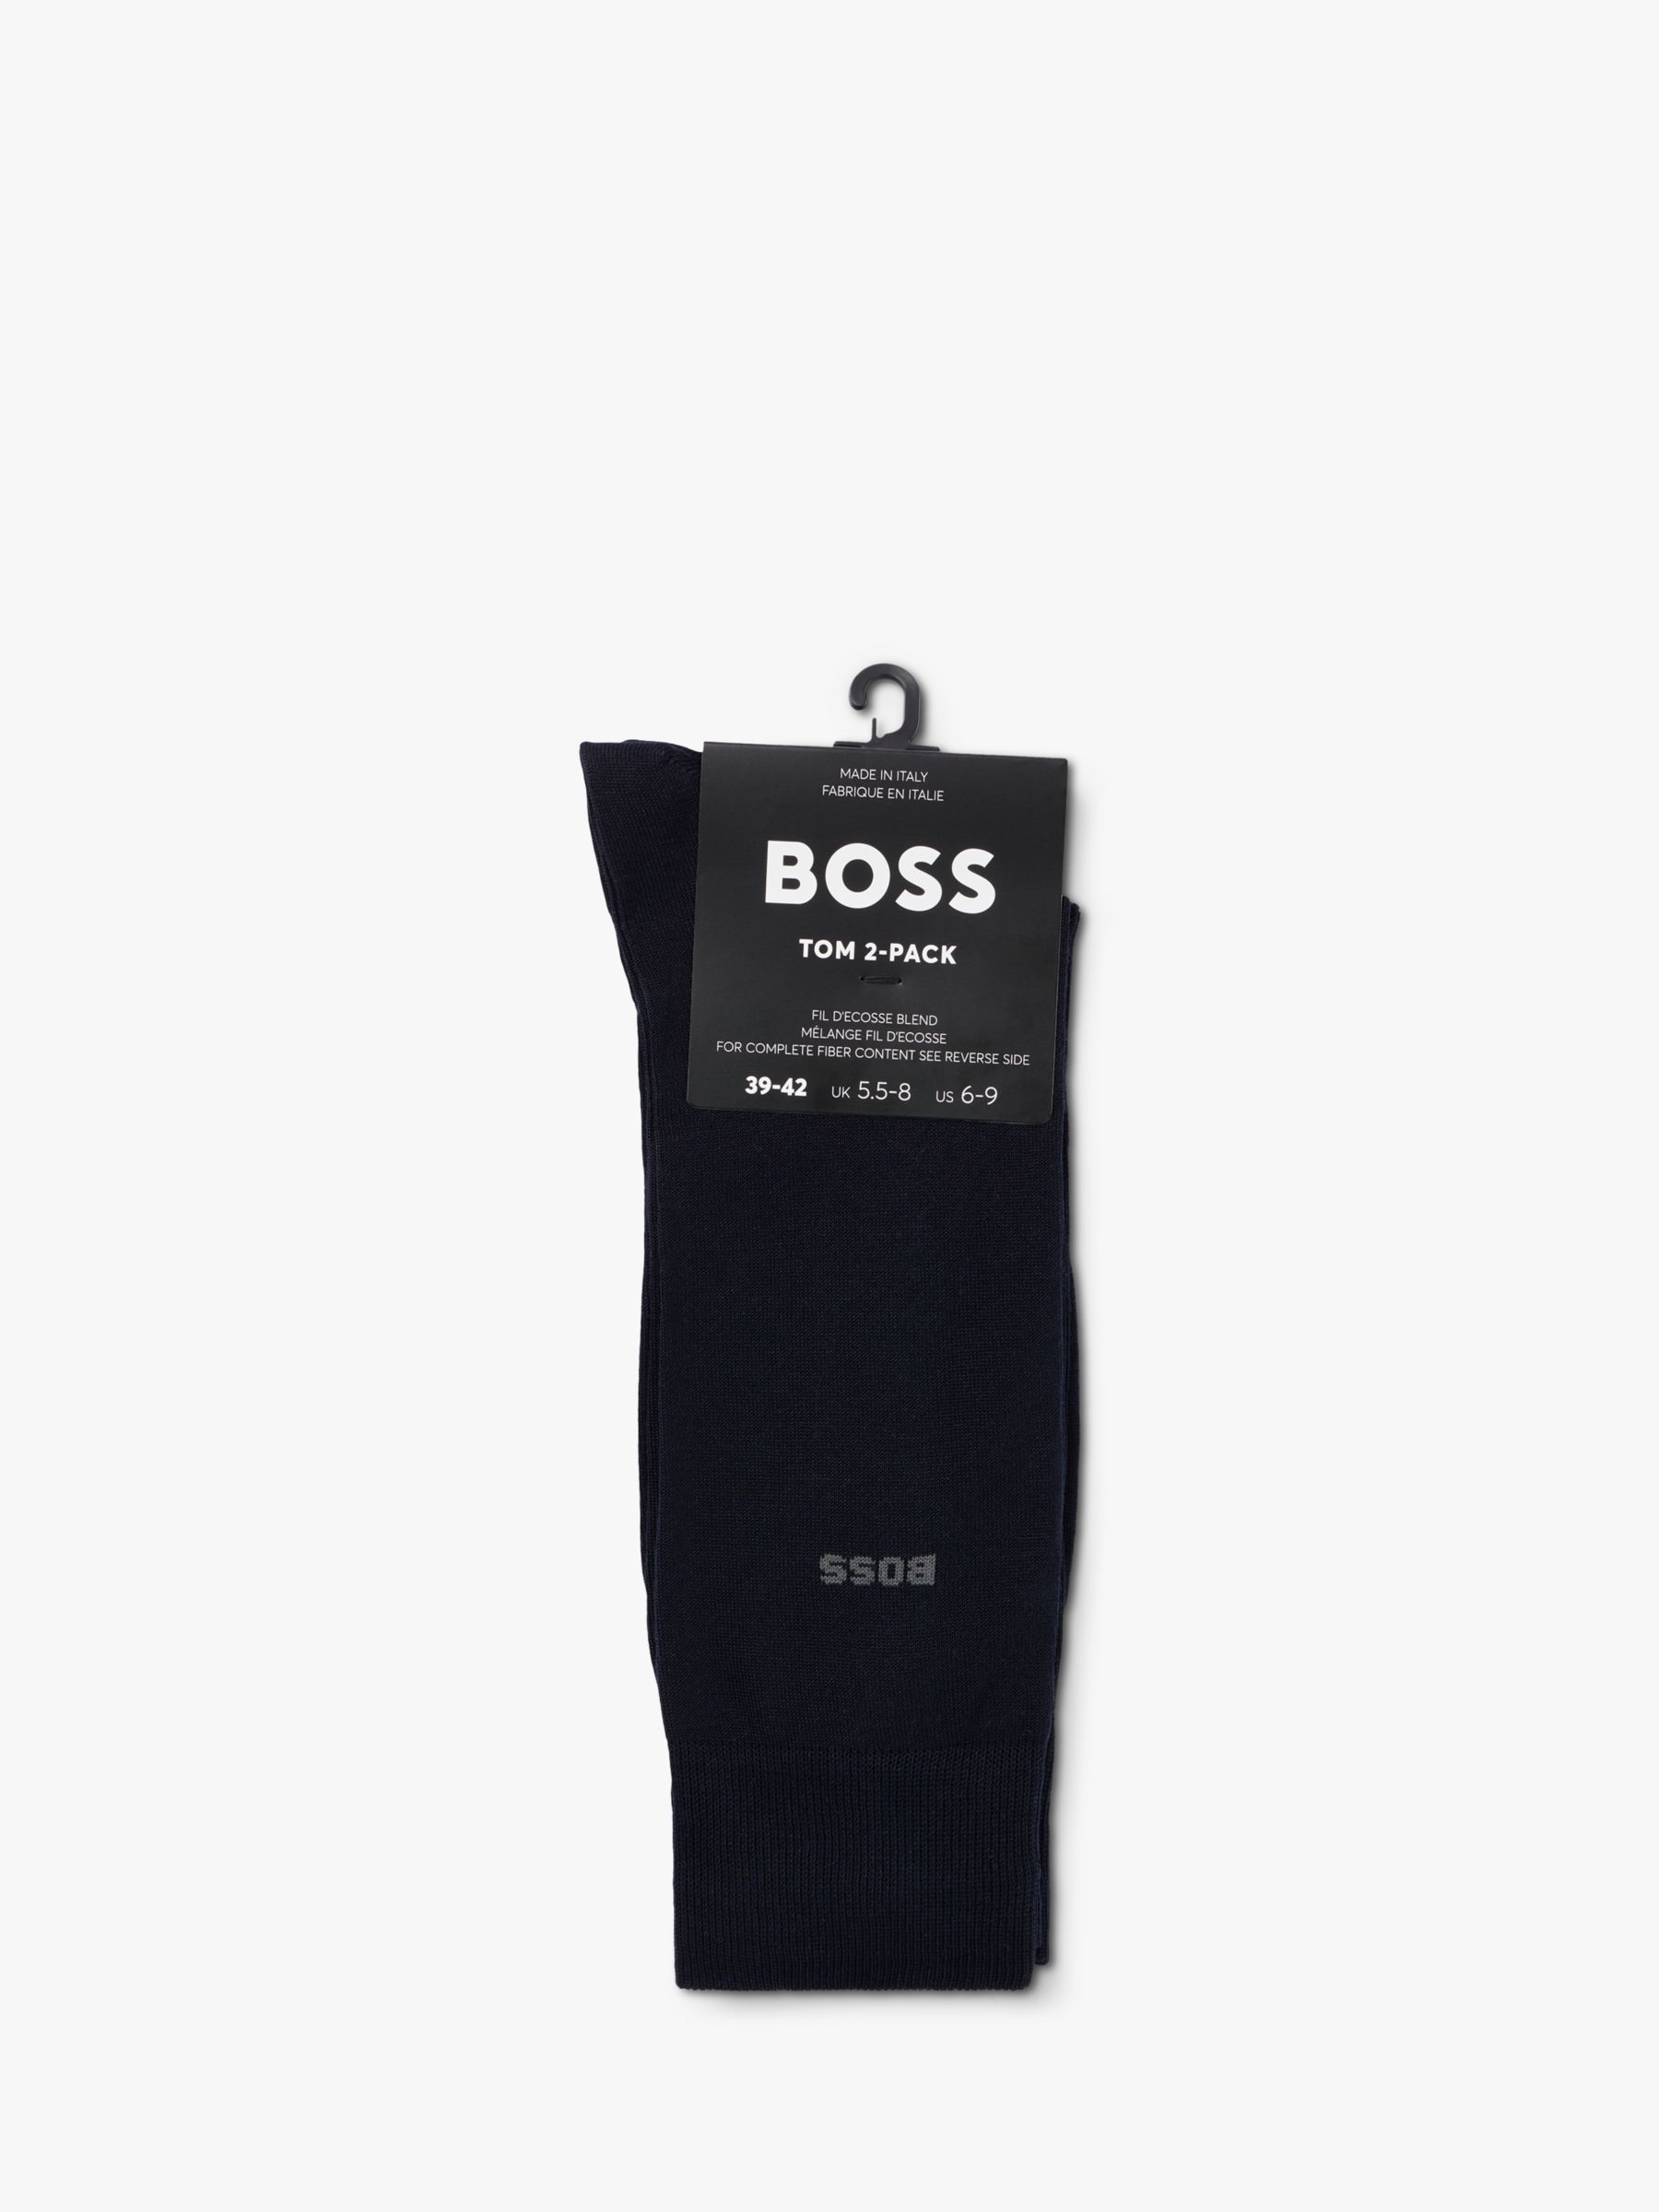 BOSS Tom Logo Socks, Pack of 2, Dark Blue, S-M